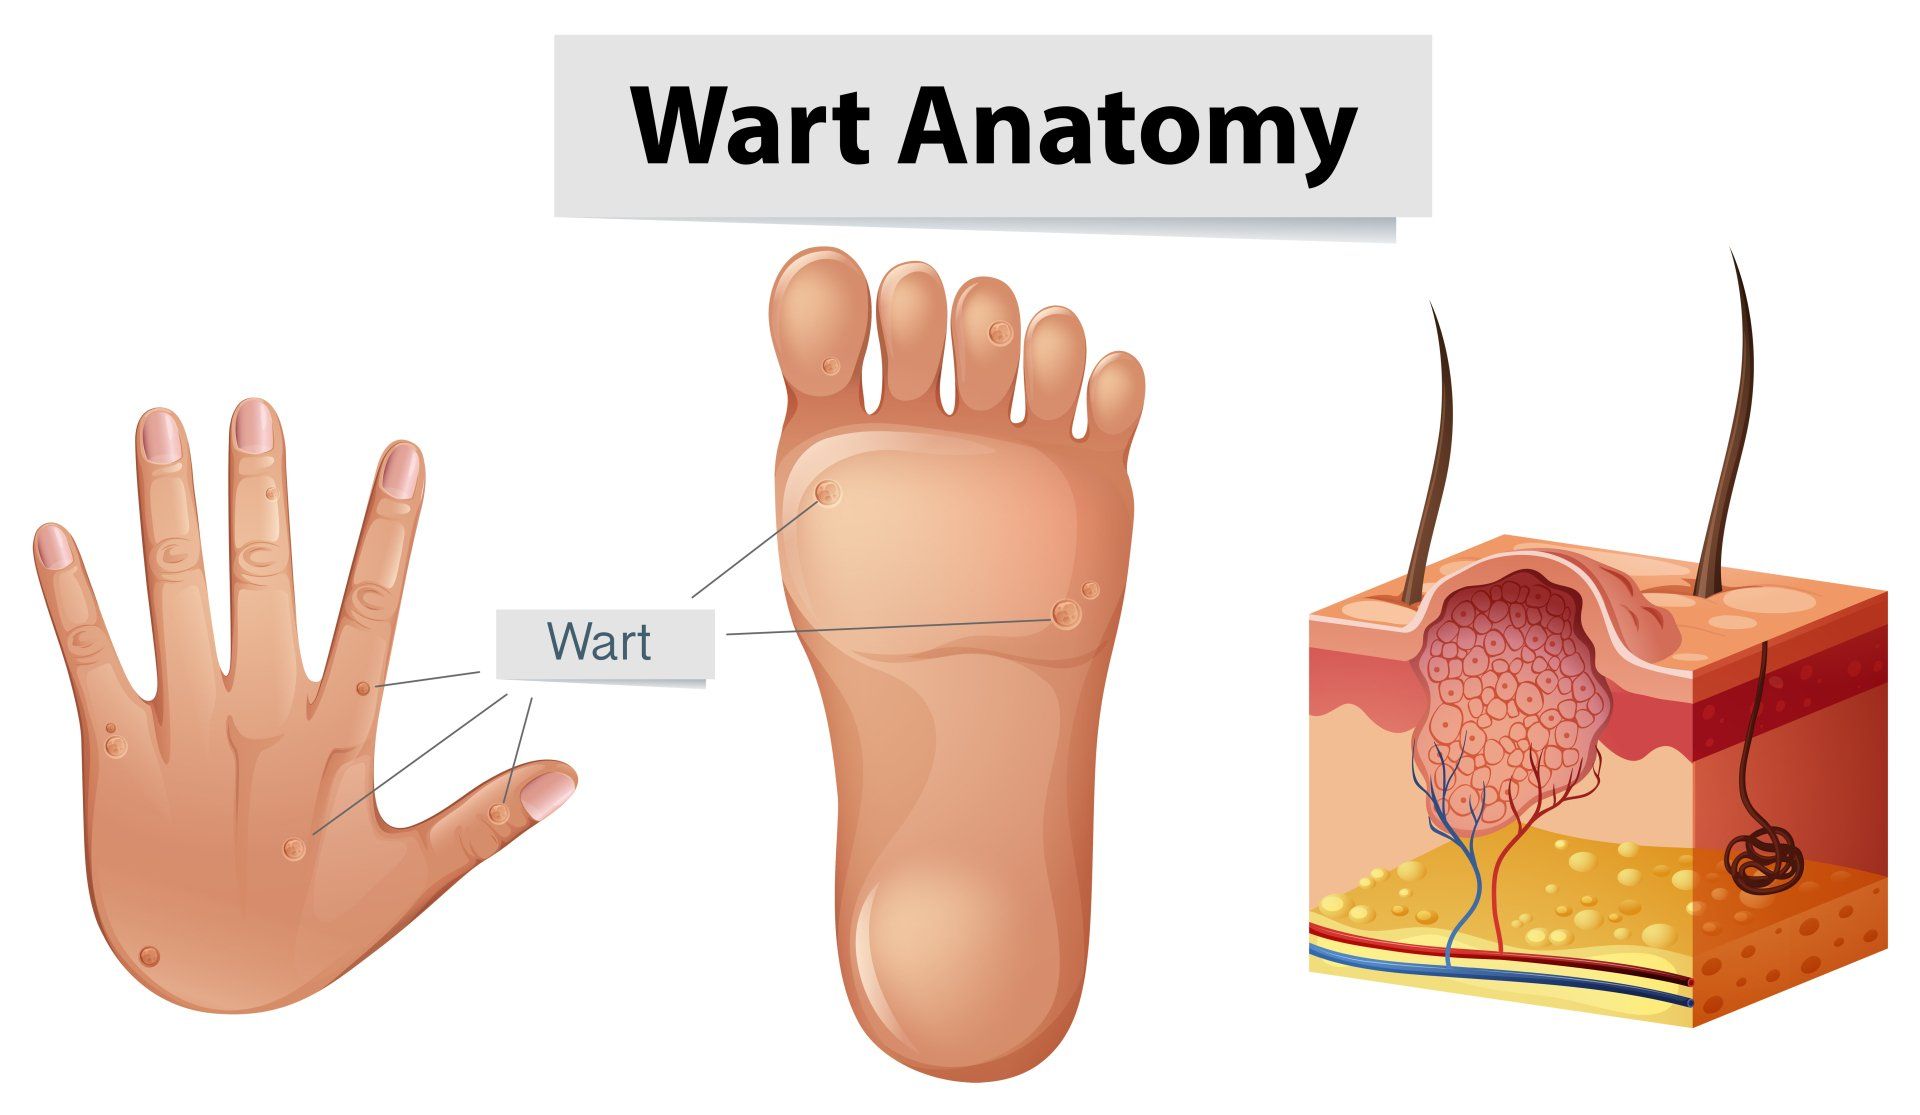 Wart Anatomy